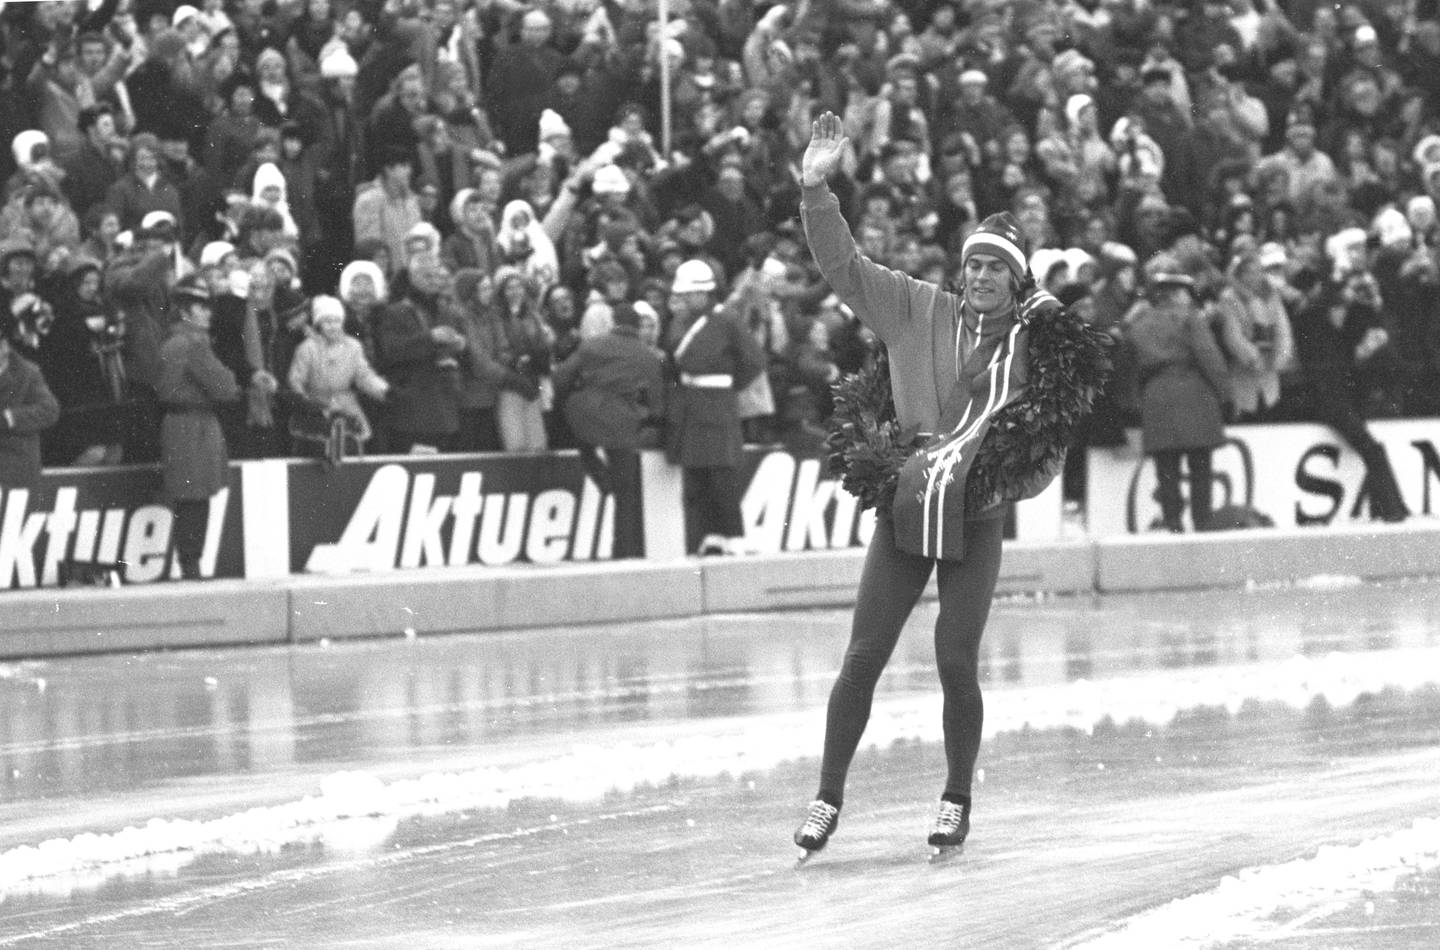 Oslo 19720220. VM på skøyter på Bislett. 
Her en glad verdensmester Ard Schenk med laurbærkrans som vinker til publikum.
Foto: NTB / Scanpix